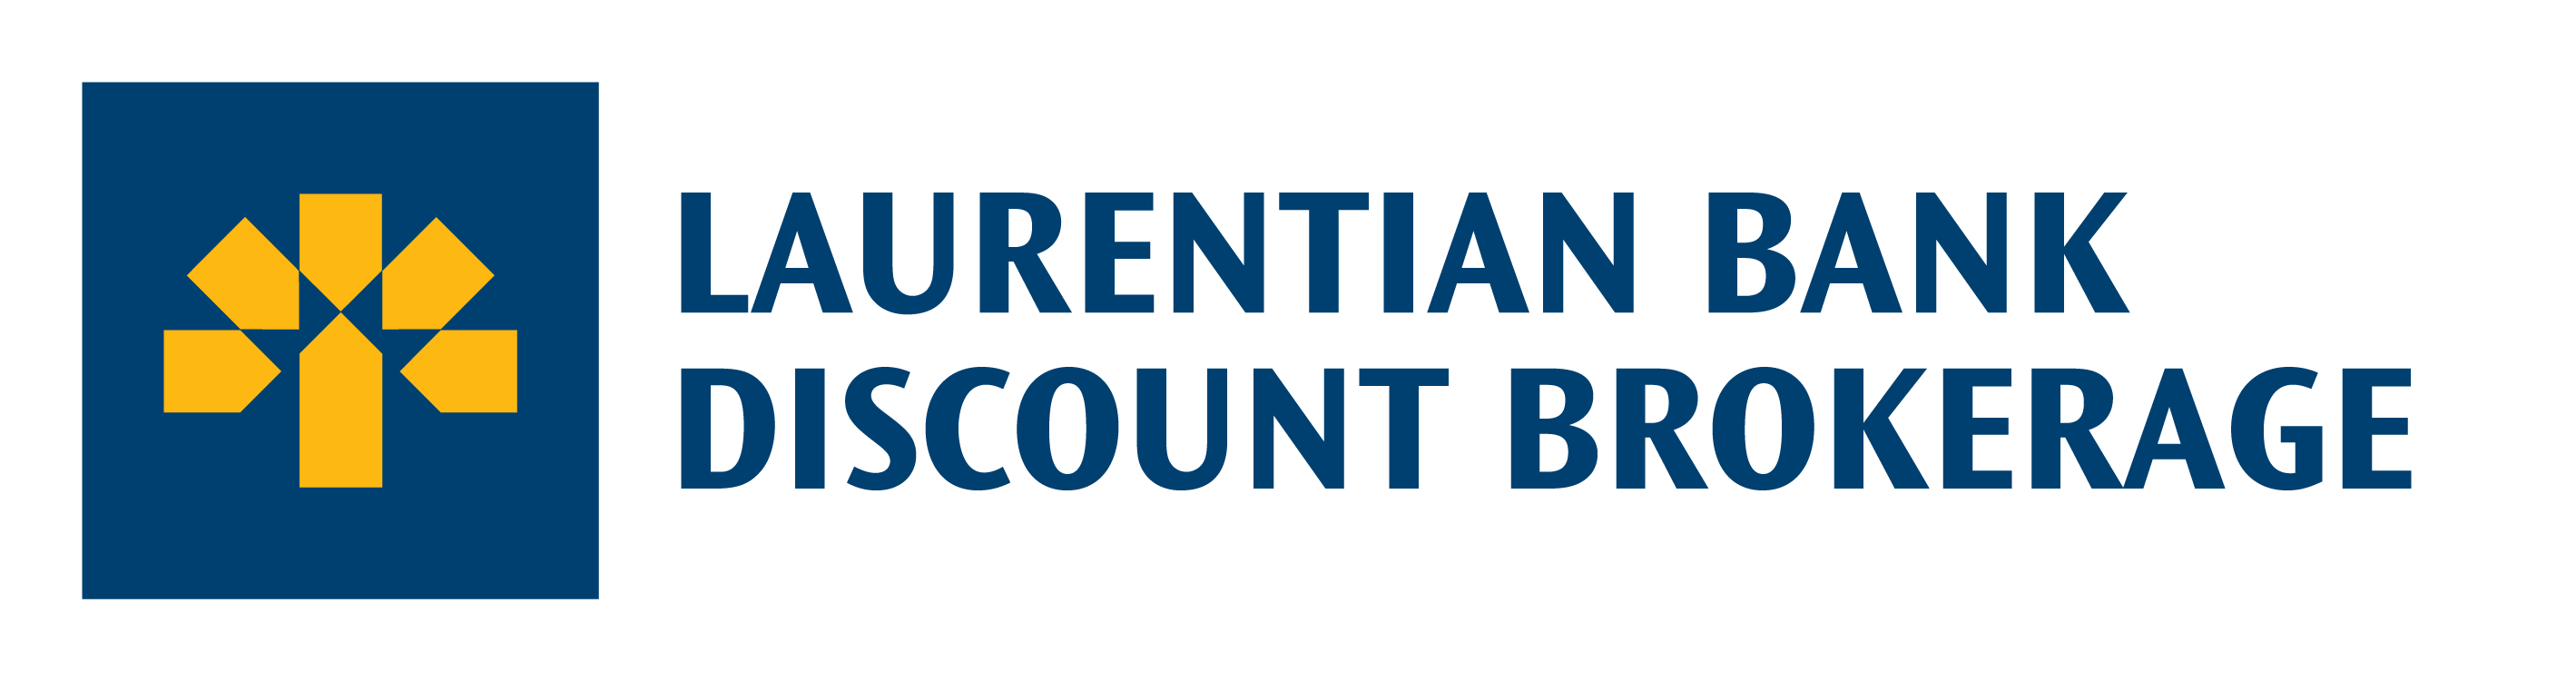 Laurentian Bank Discount Brokerage